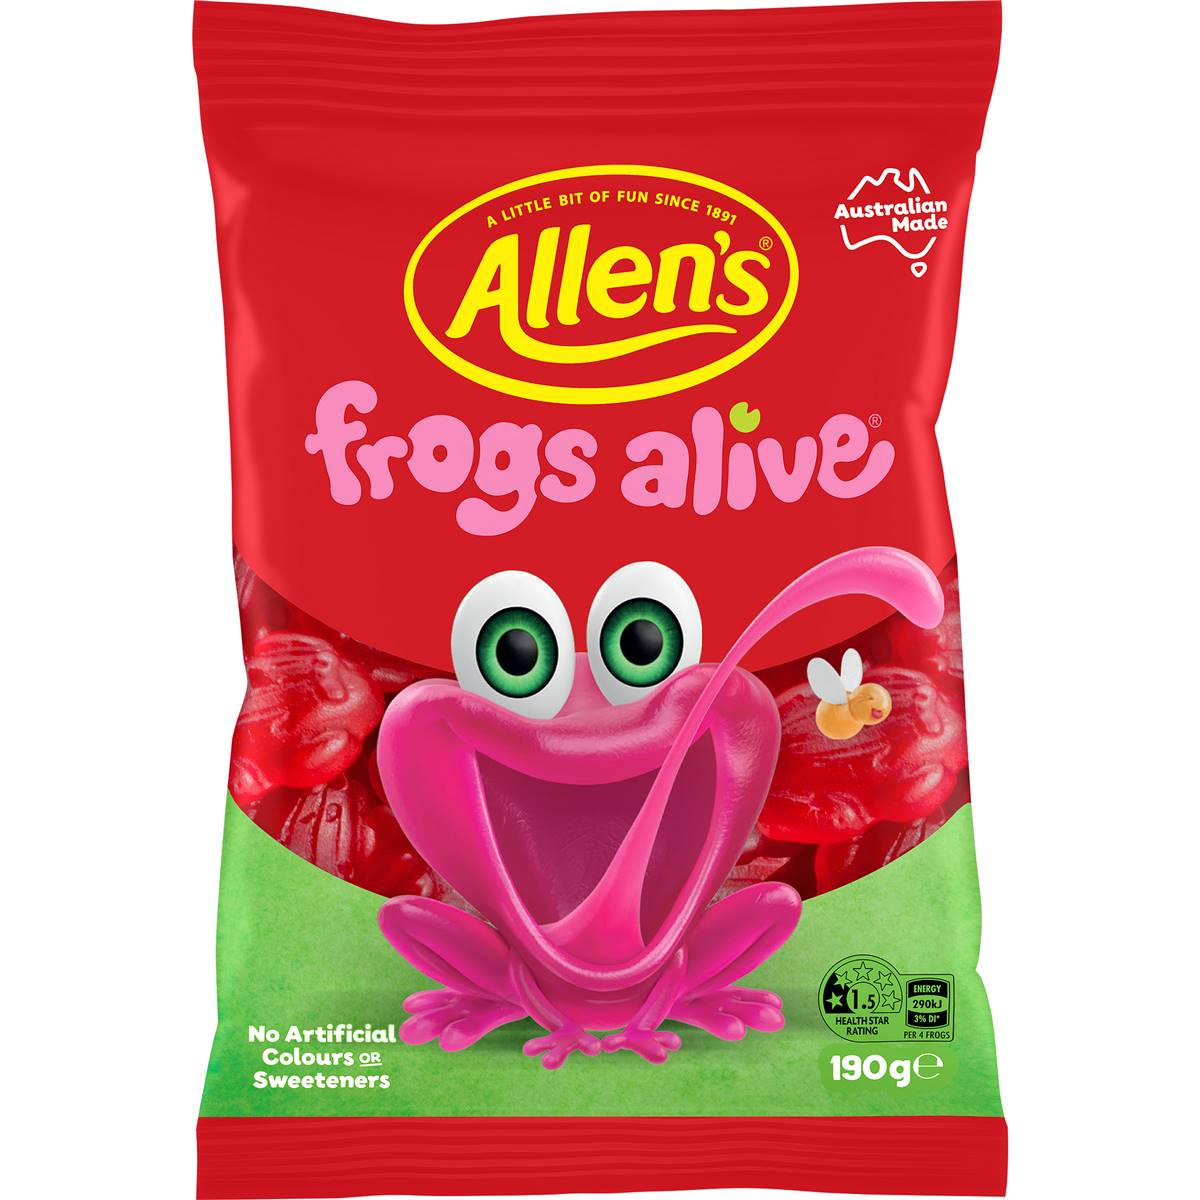 Calories in Allen's Frogs Alive Lollies Bag